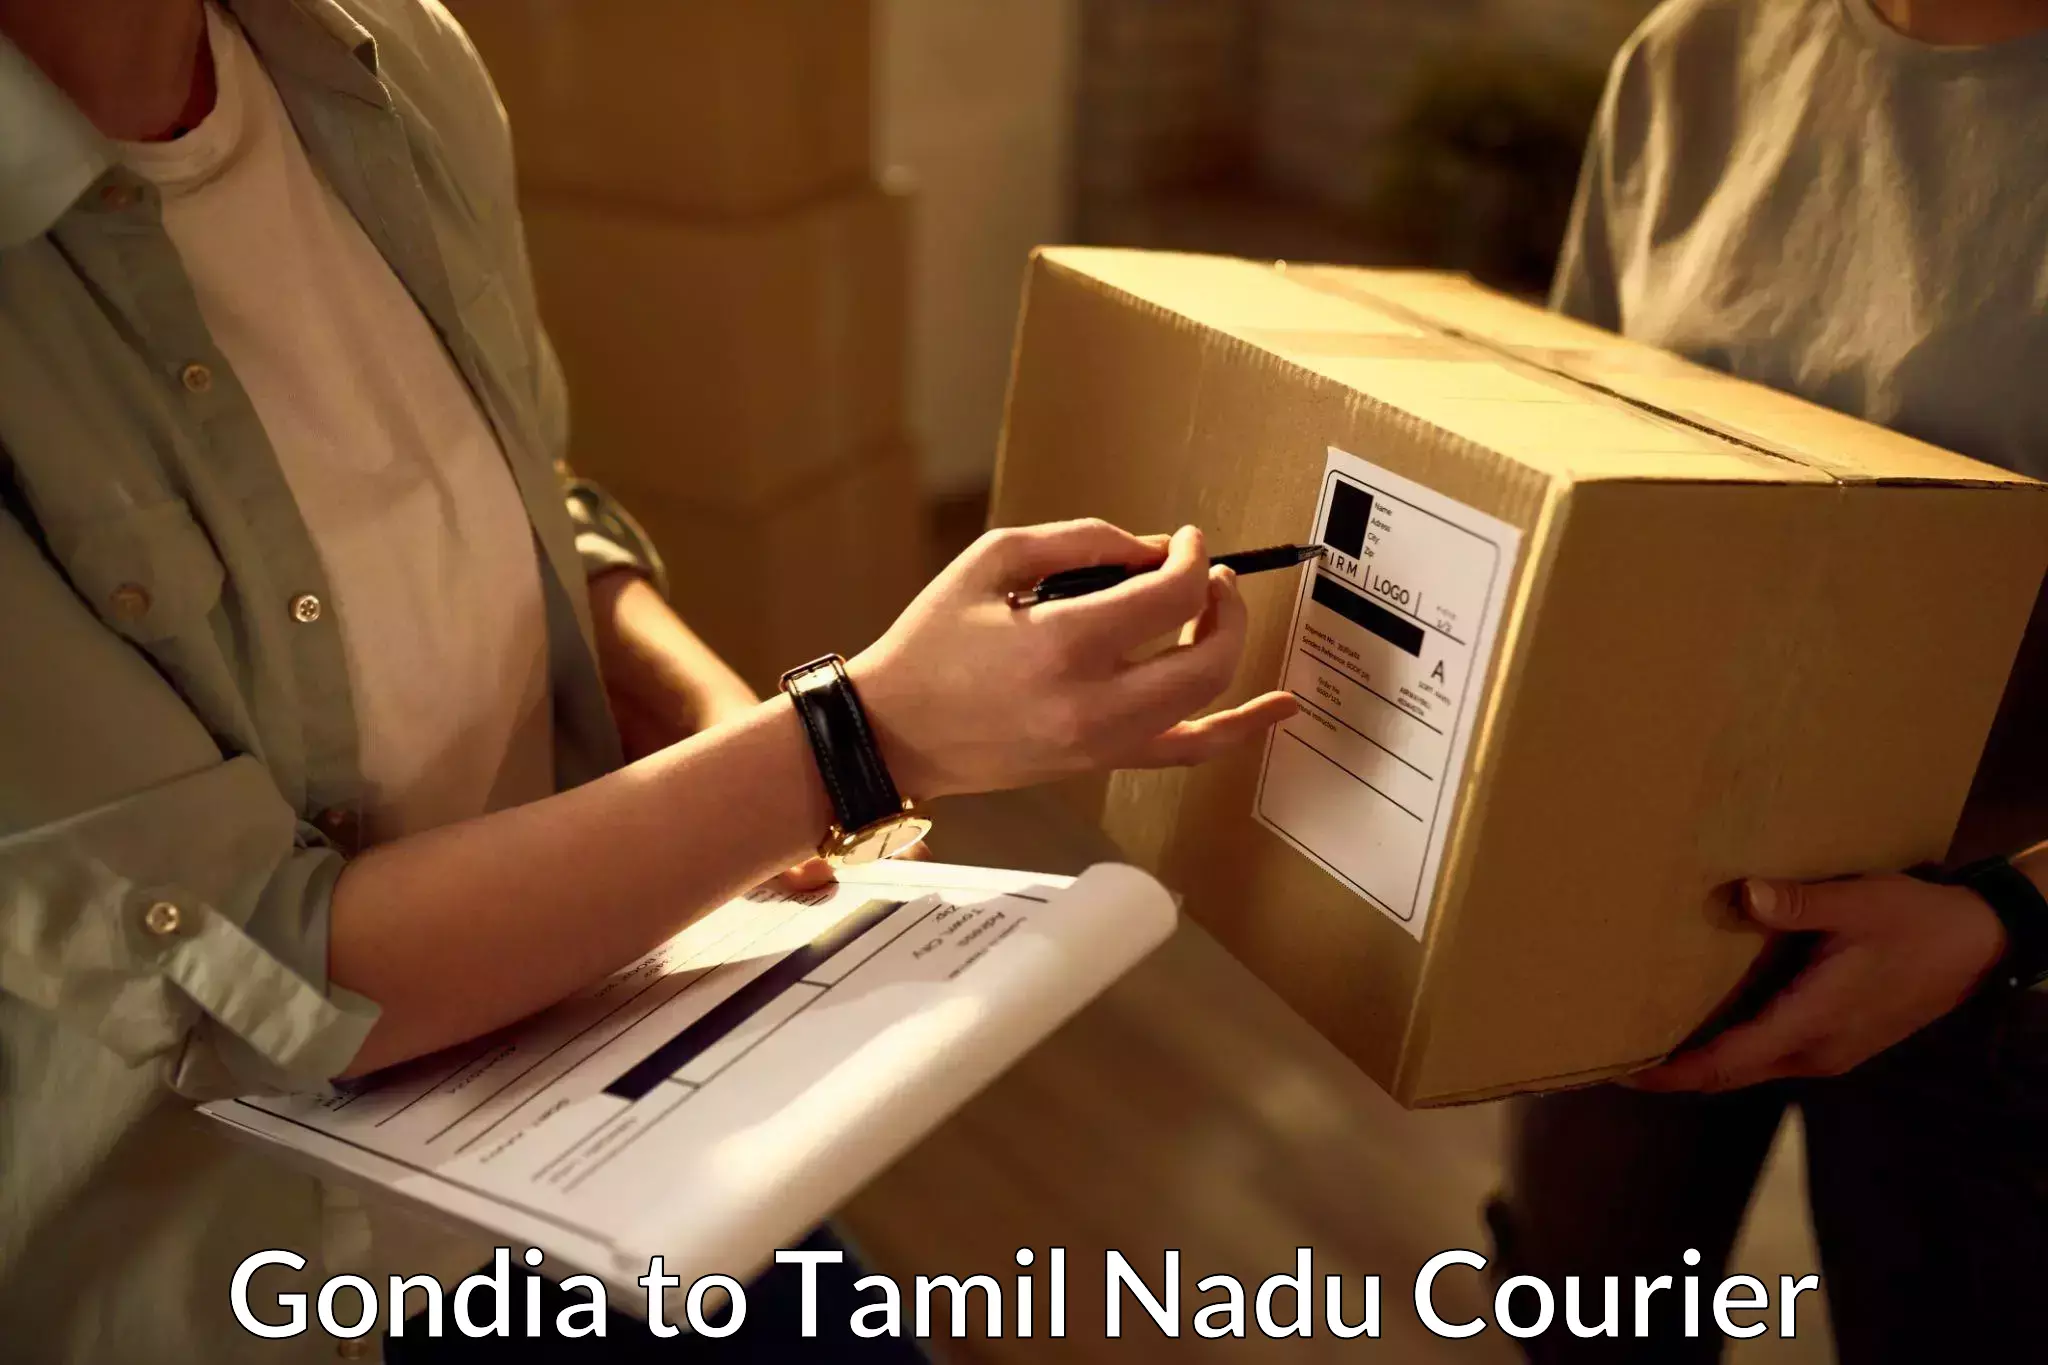 Custom courier strategies Gondia to Pudukkottai